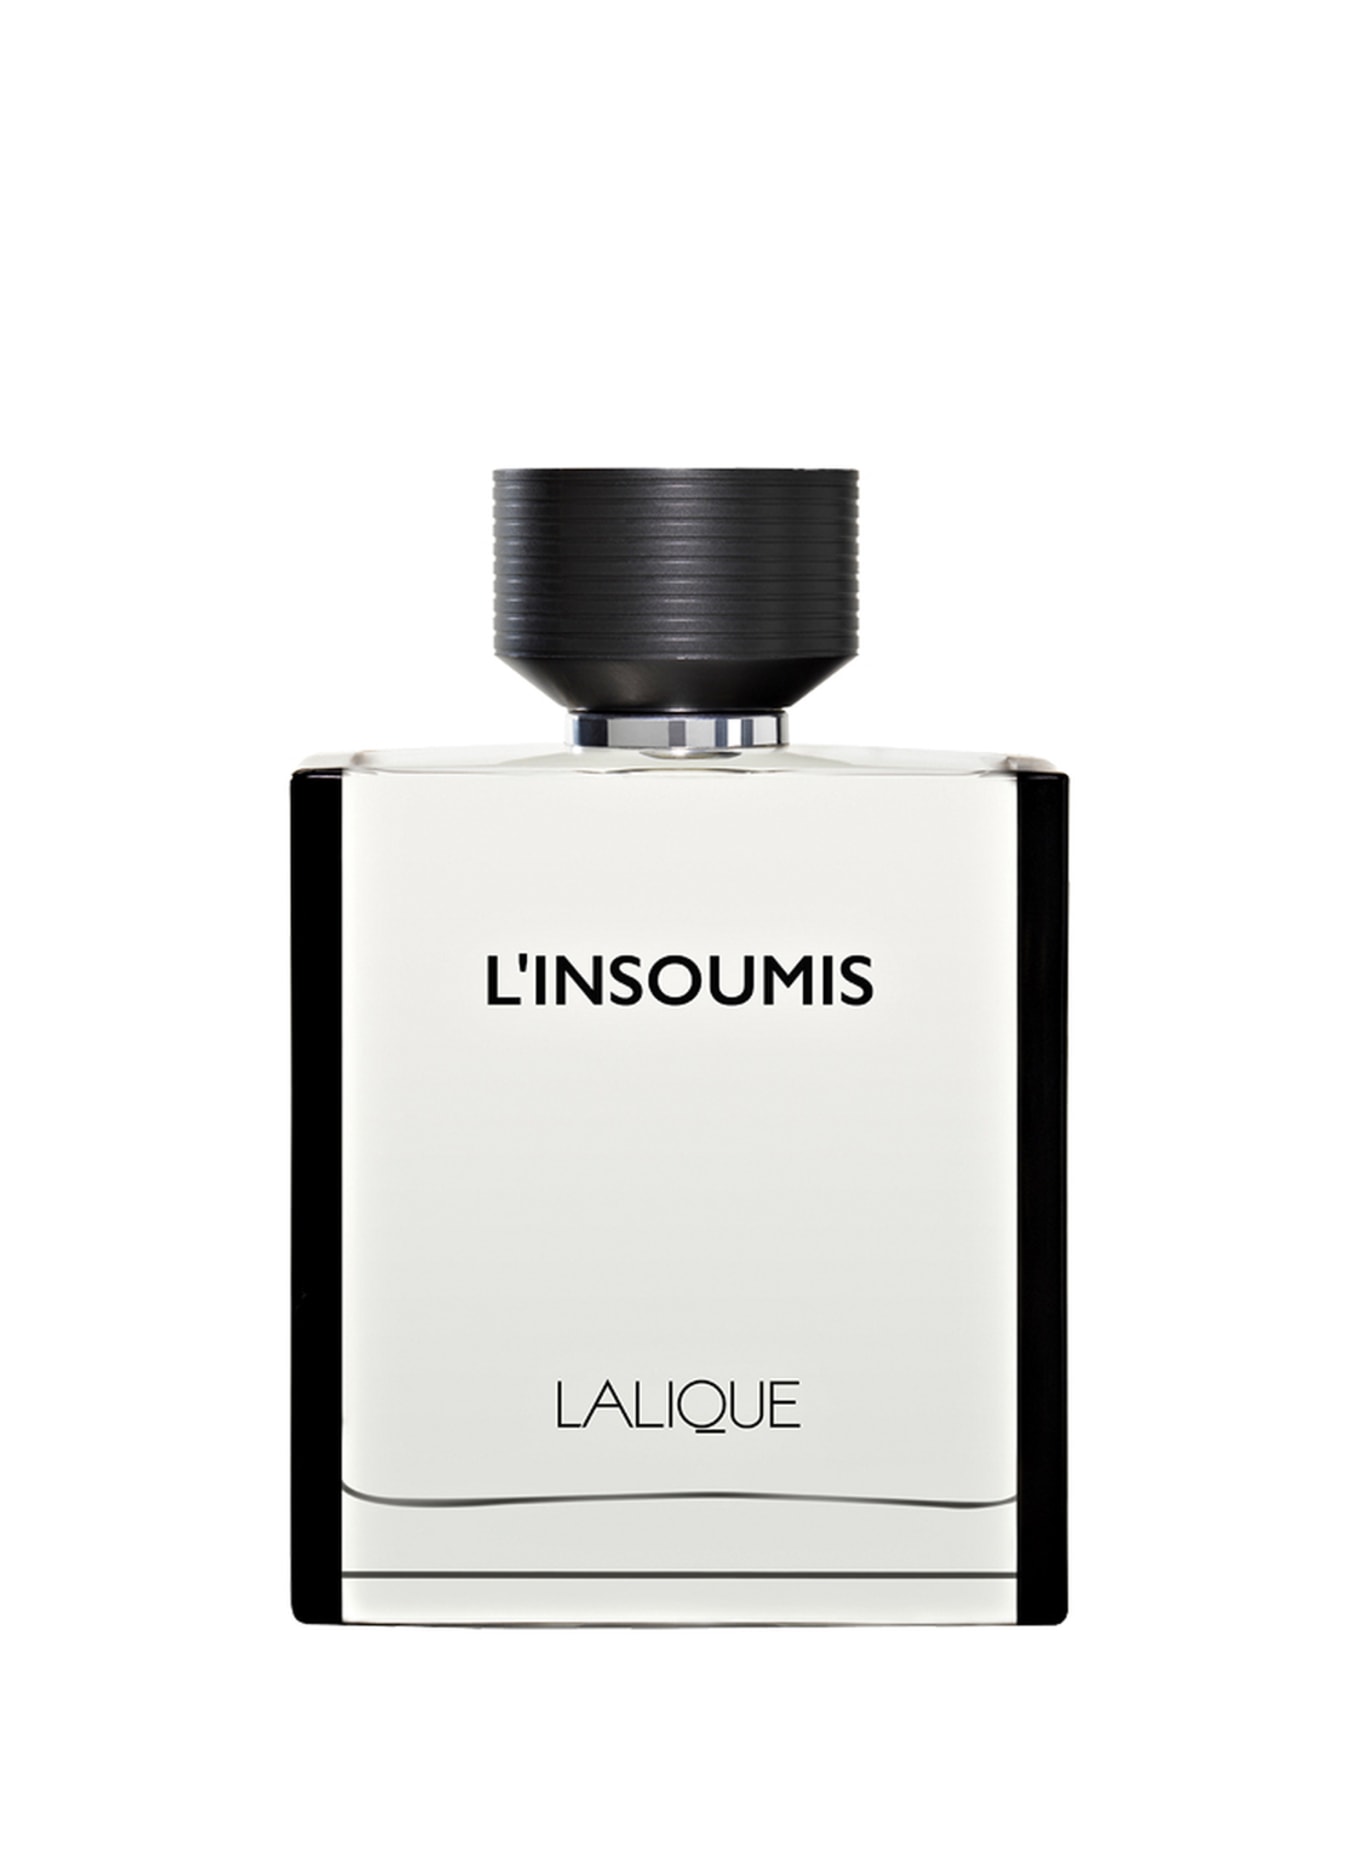 LALIQUE PARFUMS L'INSOUMIS (Obrázek 1)